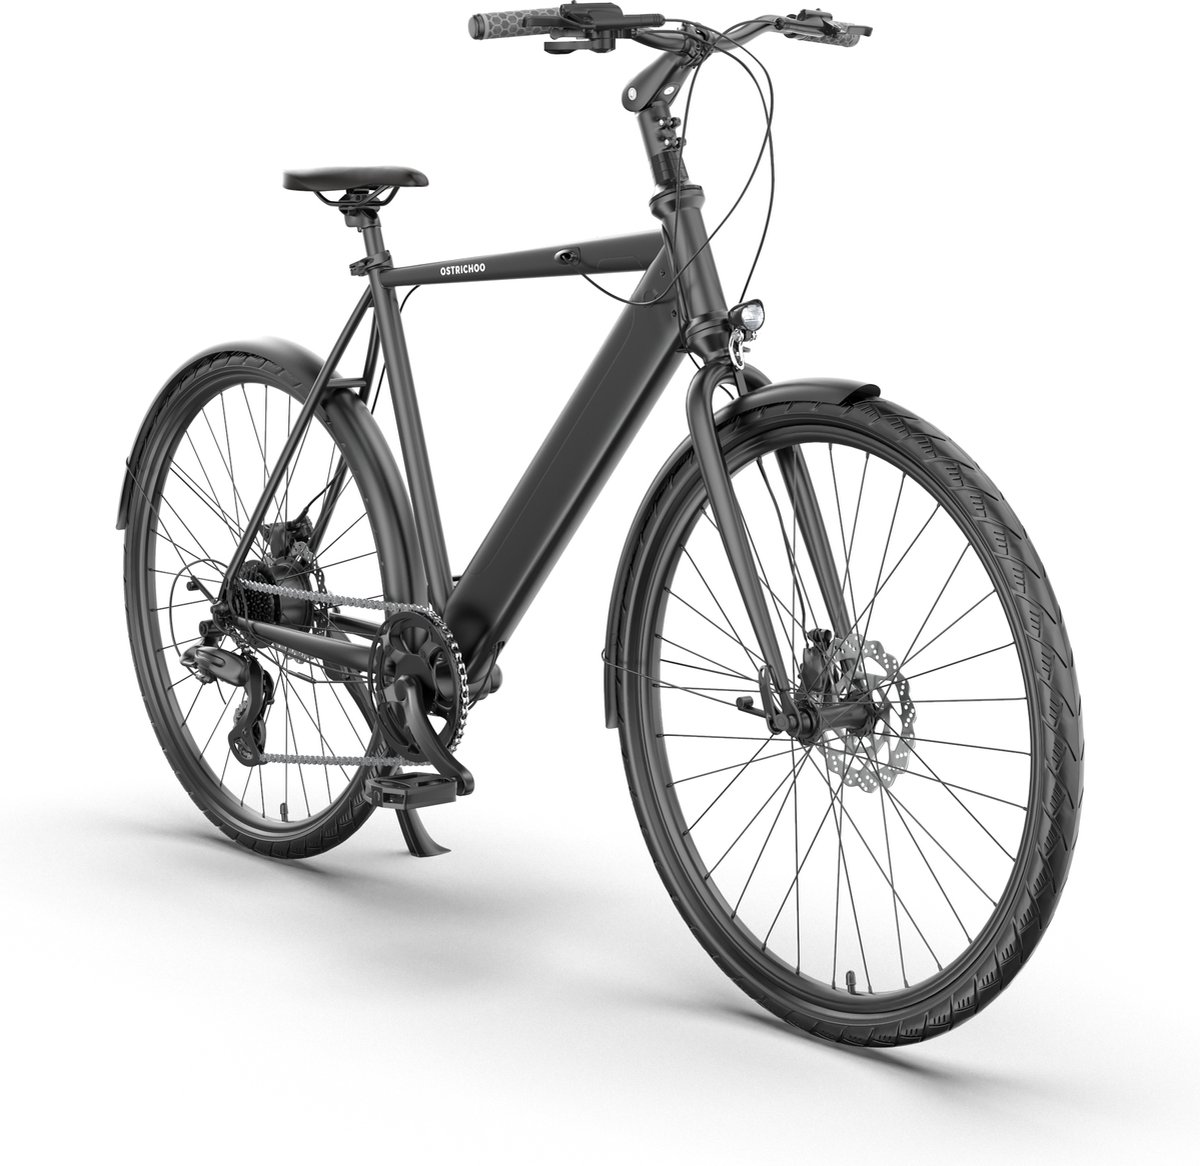 Ostrichoo® Zeno - Elektrische Fiets - Urban E-bike - Uitgerust met Supercondensator - 30 min laadtijd - Framemaat: 51cm